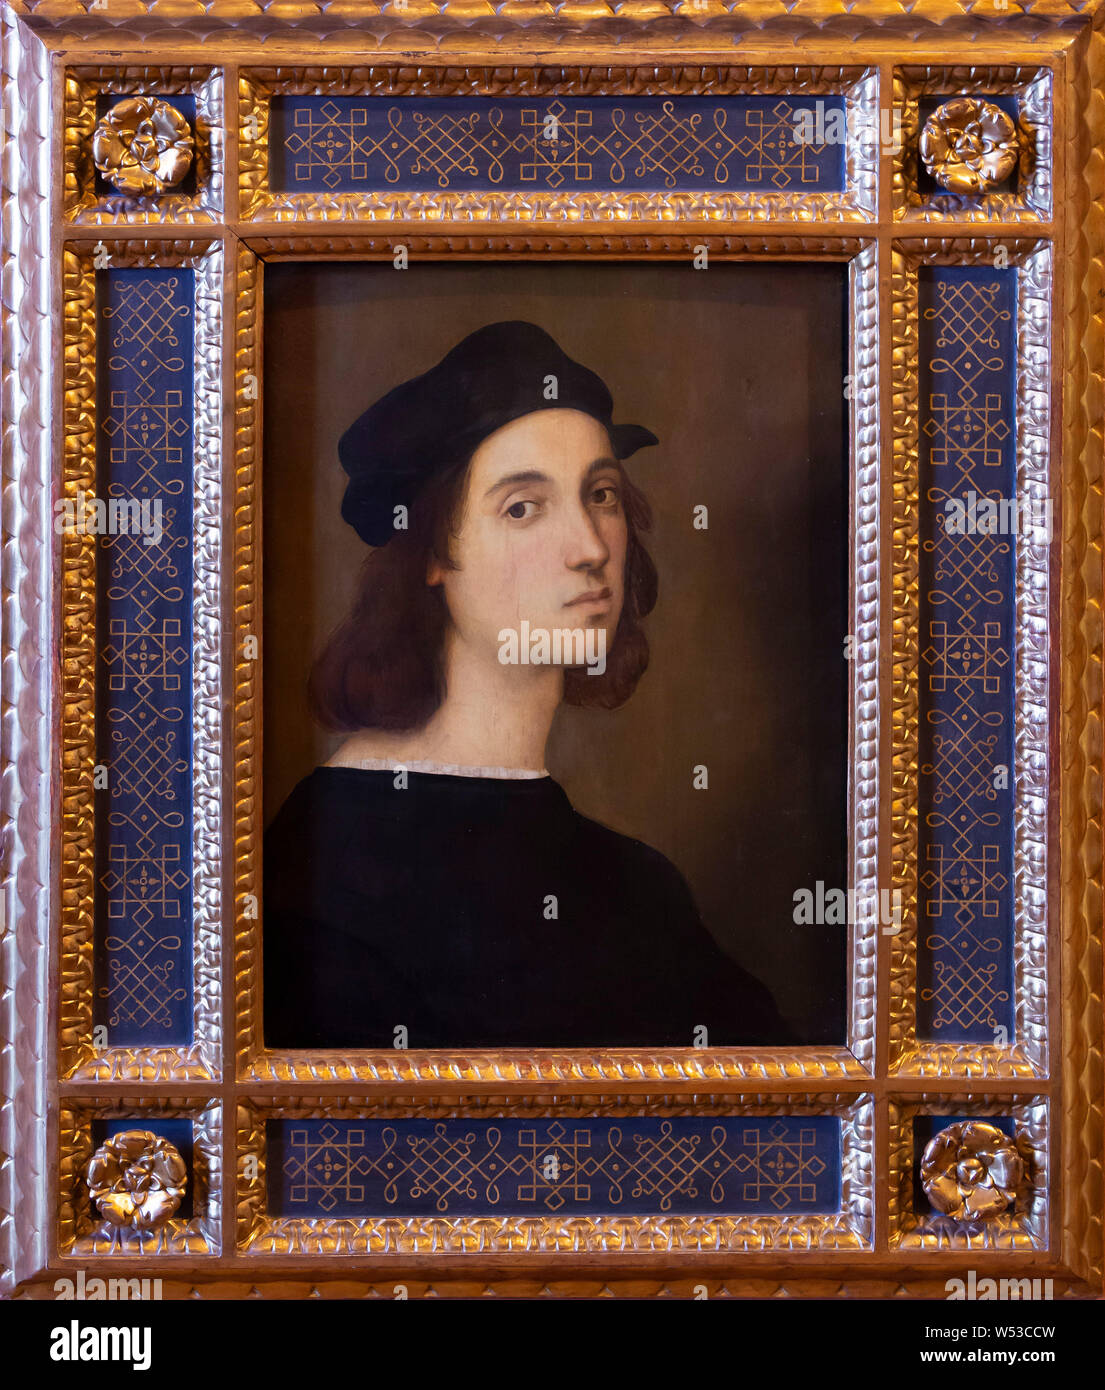 Self-portrait, Raphael, 1504-1506, Uffizi Gallery, Florence, Tuscany, Italy, Europe Stock Photo